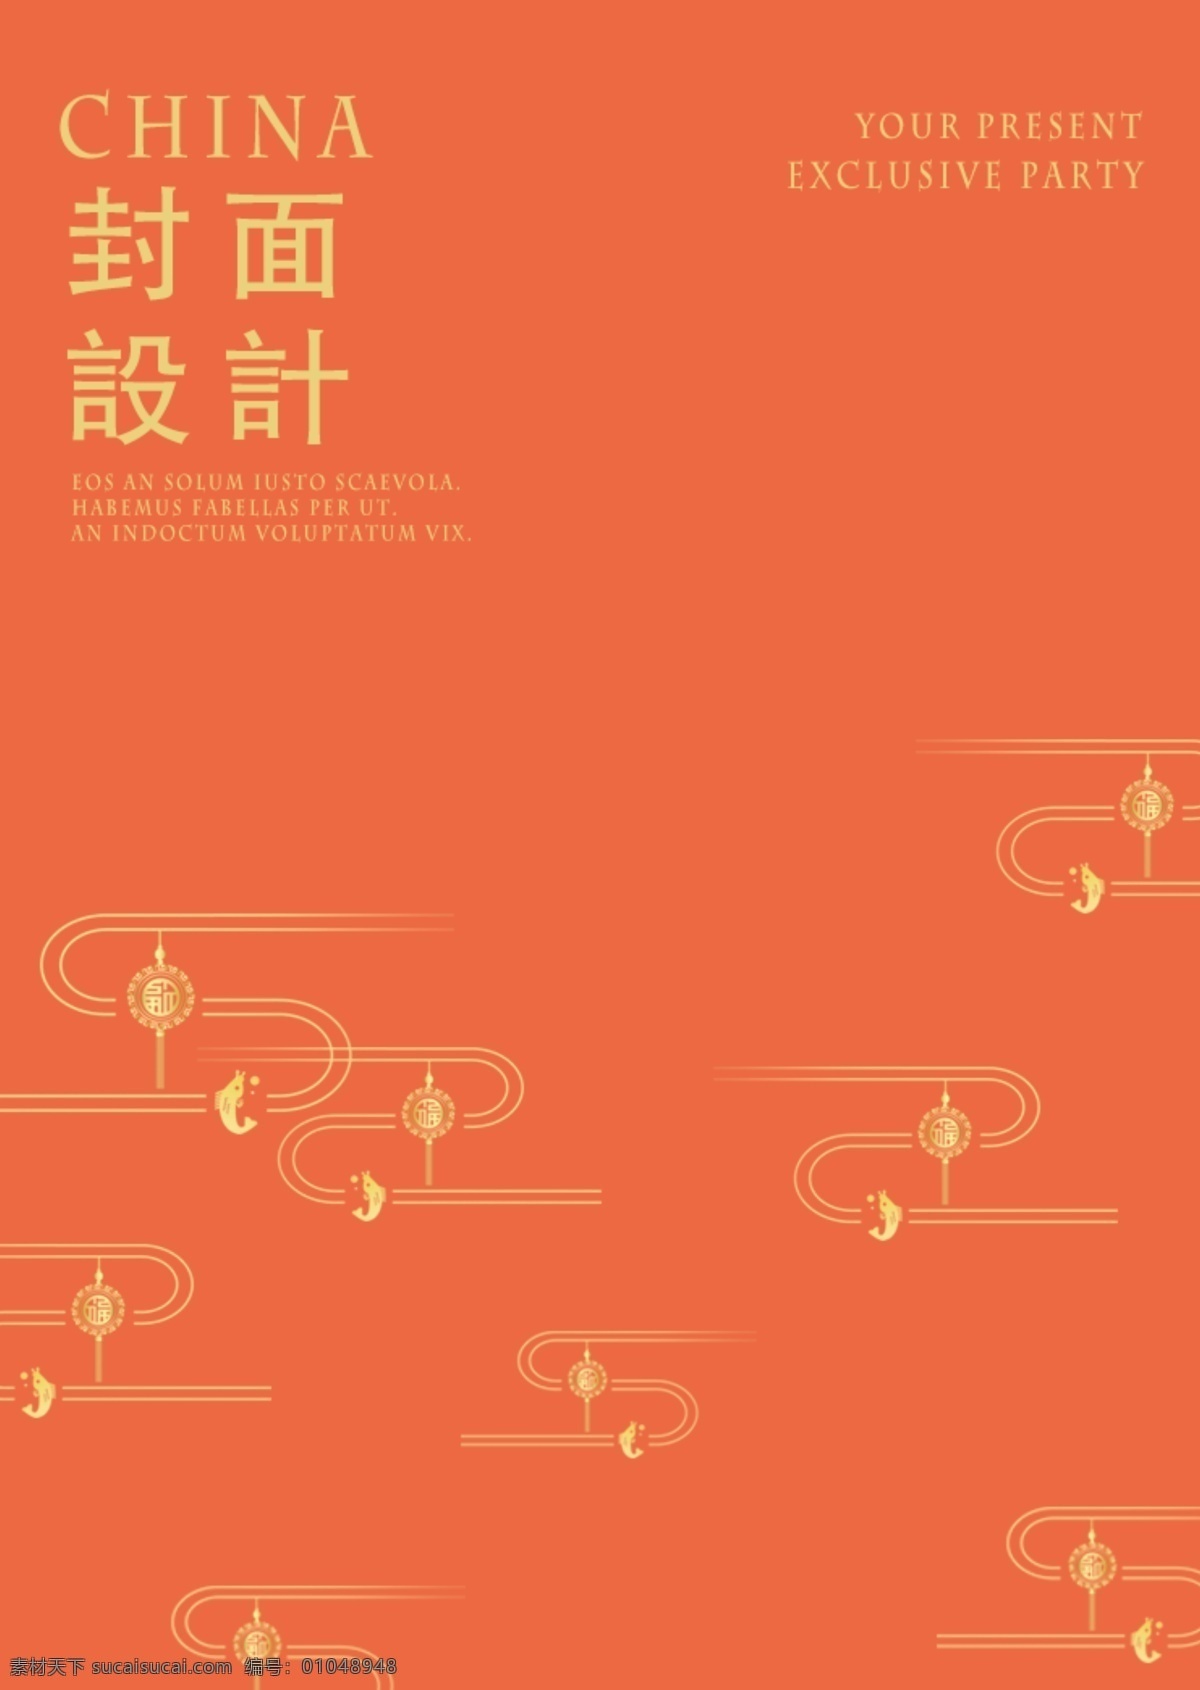 中国 云 盖 海报 盖子设计 文化 上运 节气 节气文化 节气文化秧田 节气文化海报 中国文化